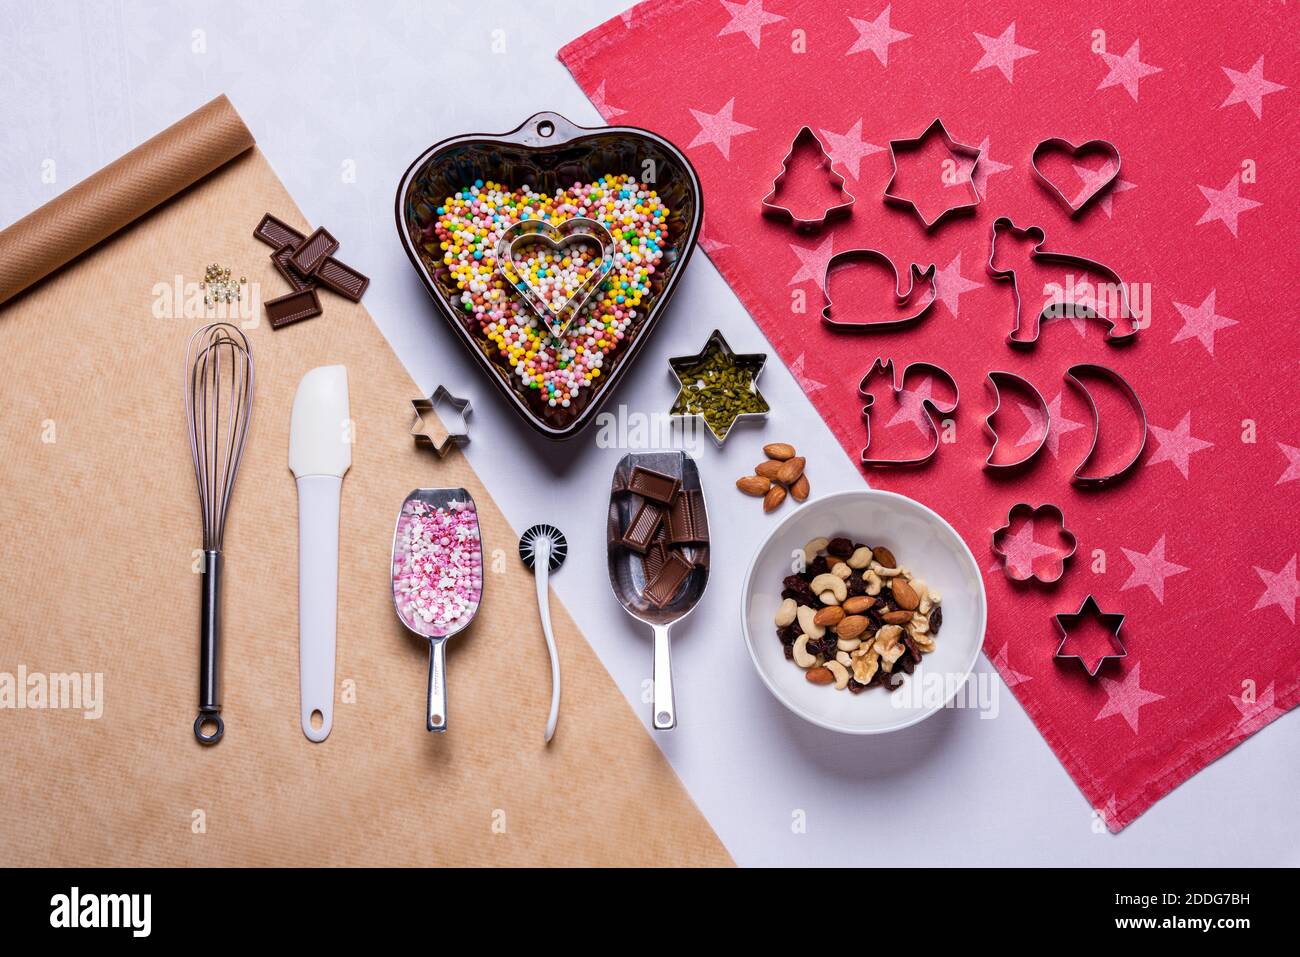 Zur Adventszeit und Weihnachten werden lekere Kekse gebacken Foto Stock